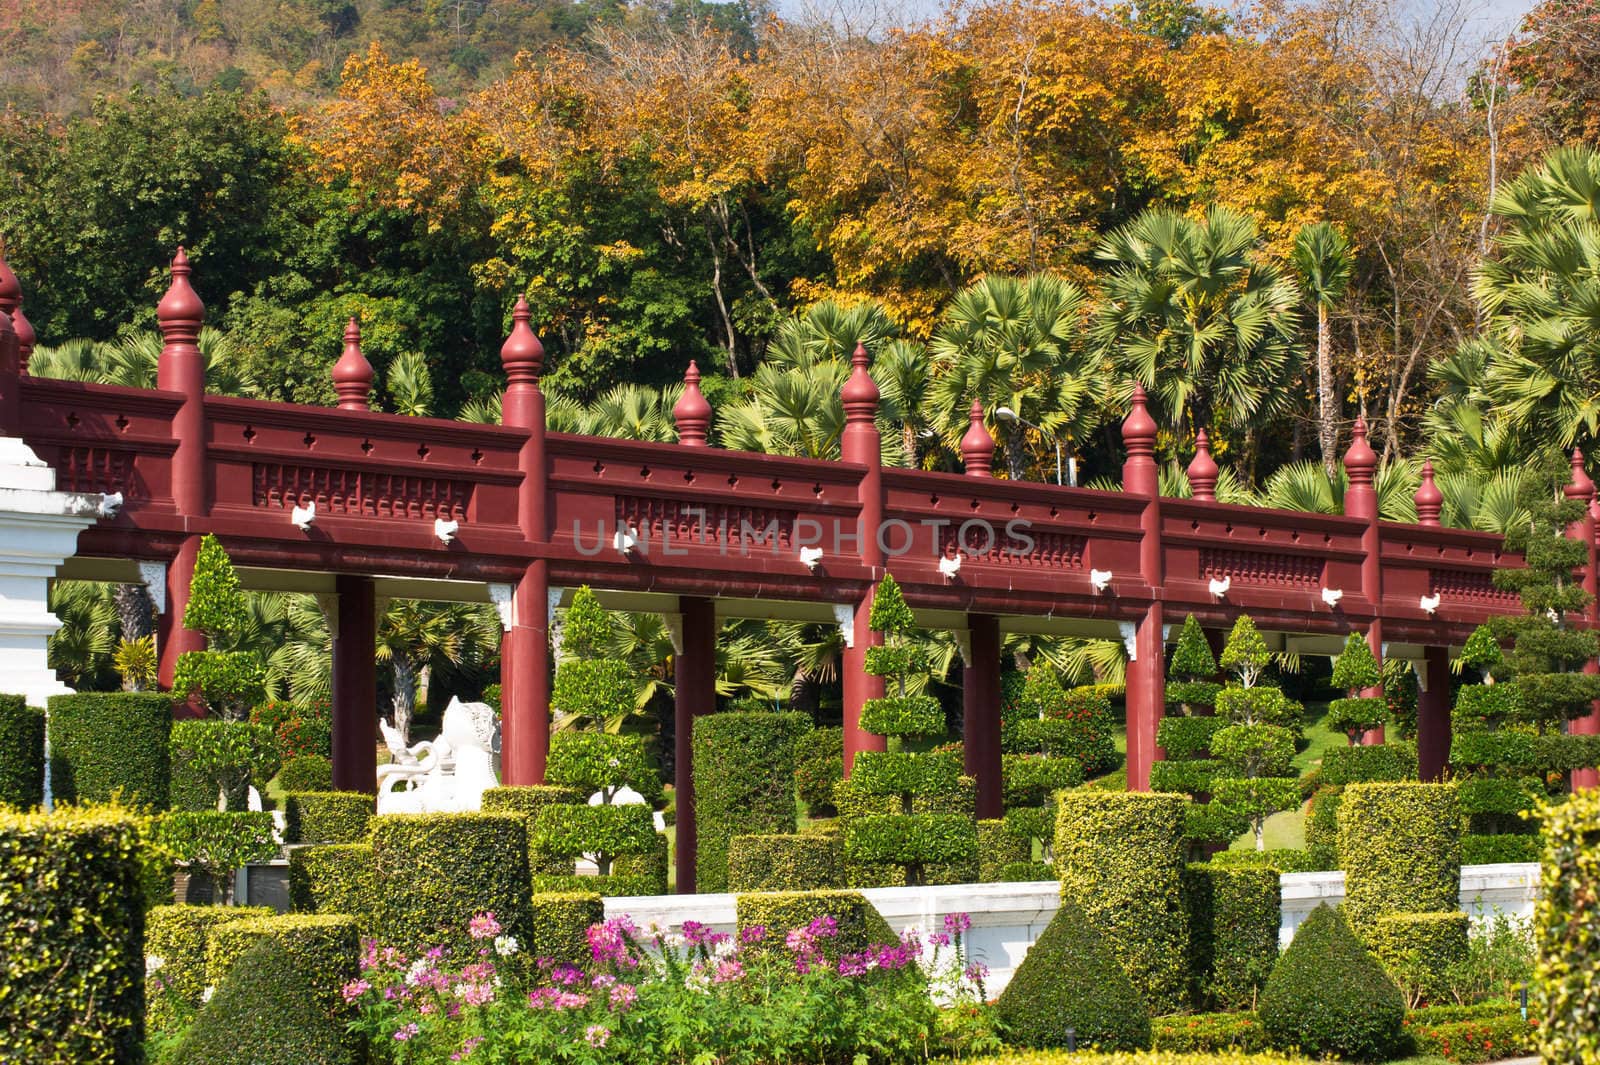 Red wooden bridge in the garden ,thailand